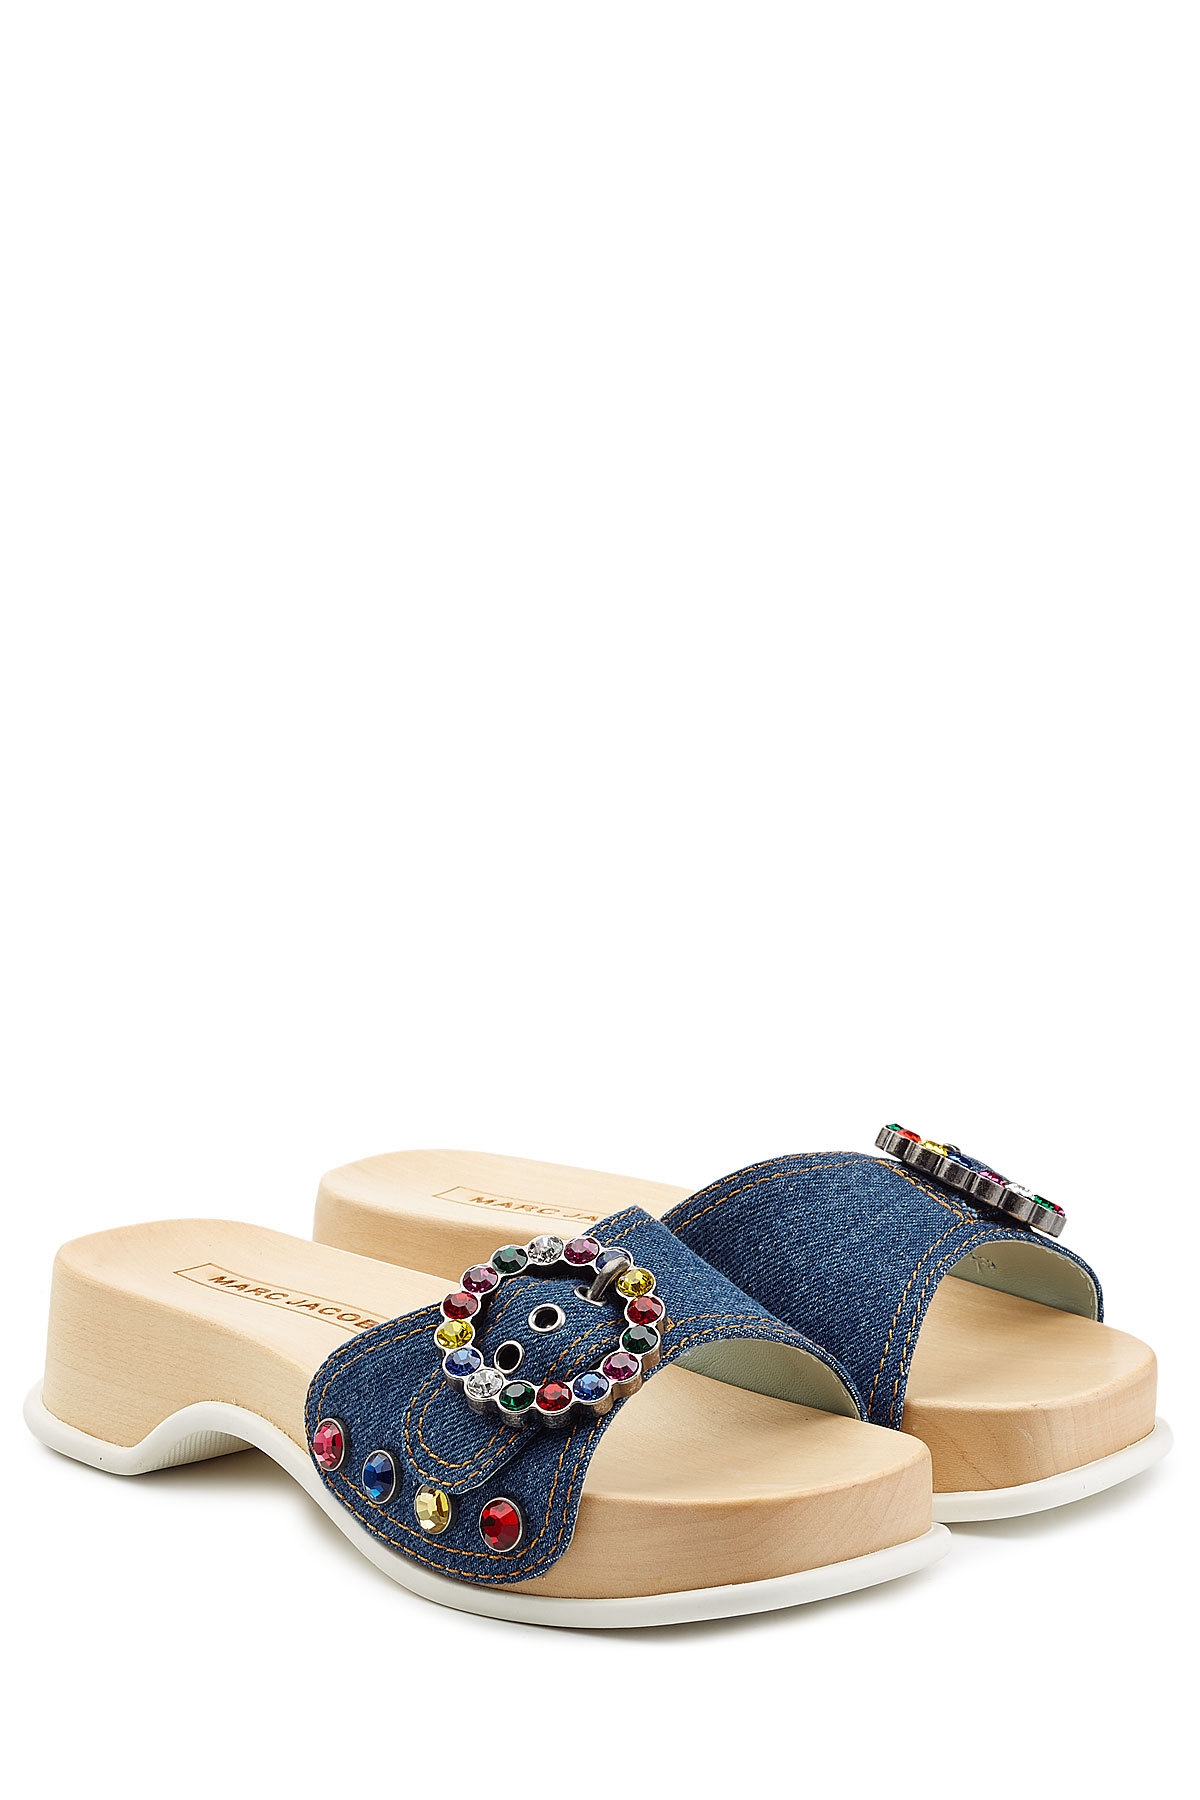 Marc Jacobs - Embellished Denim Sandals